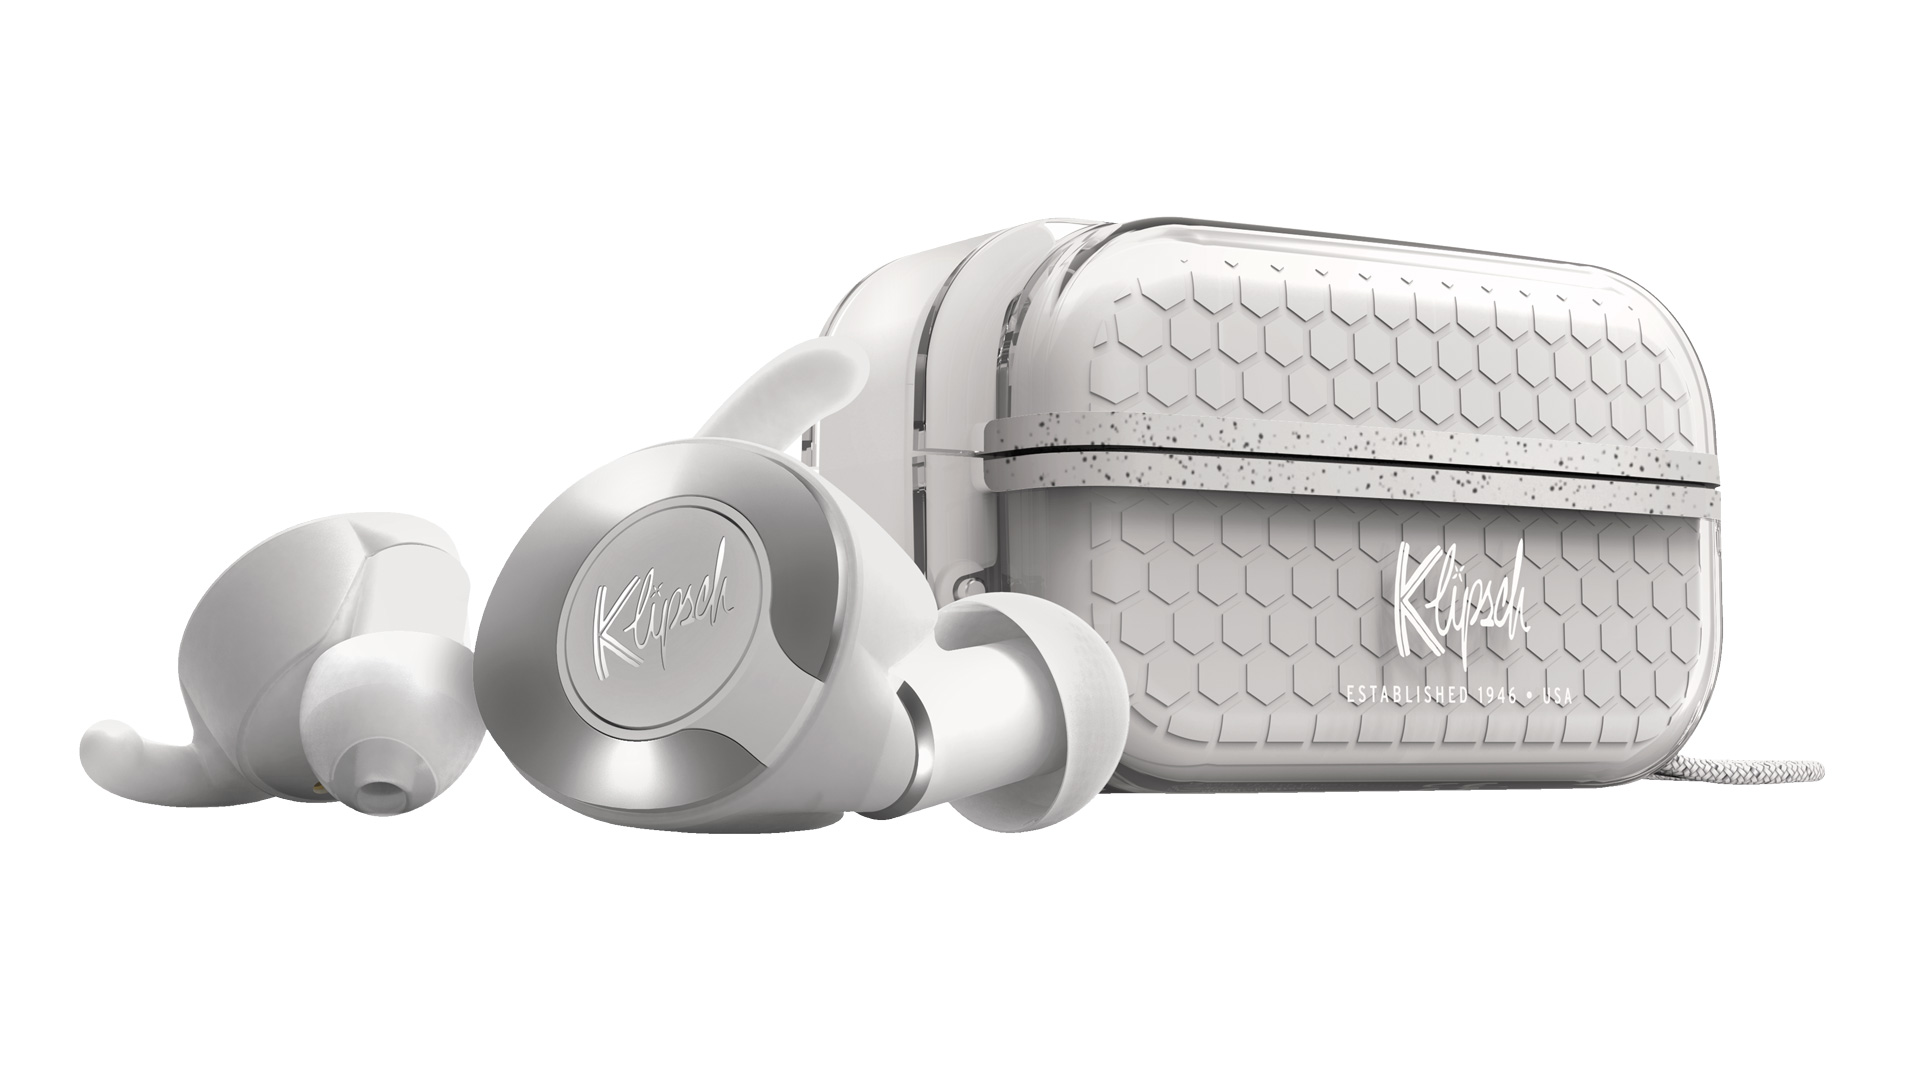 New True Wireless In-Ears from Klipsch: Stereo Magazine